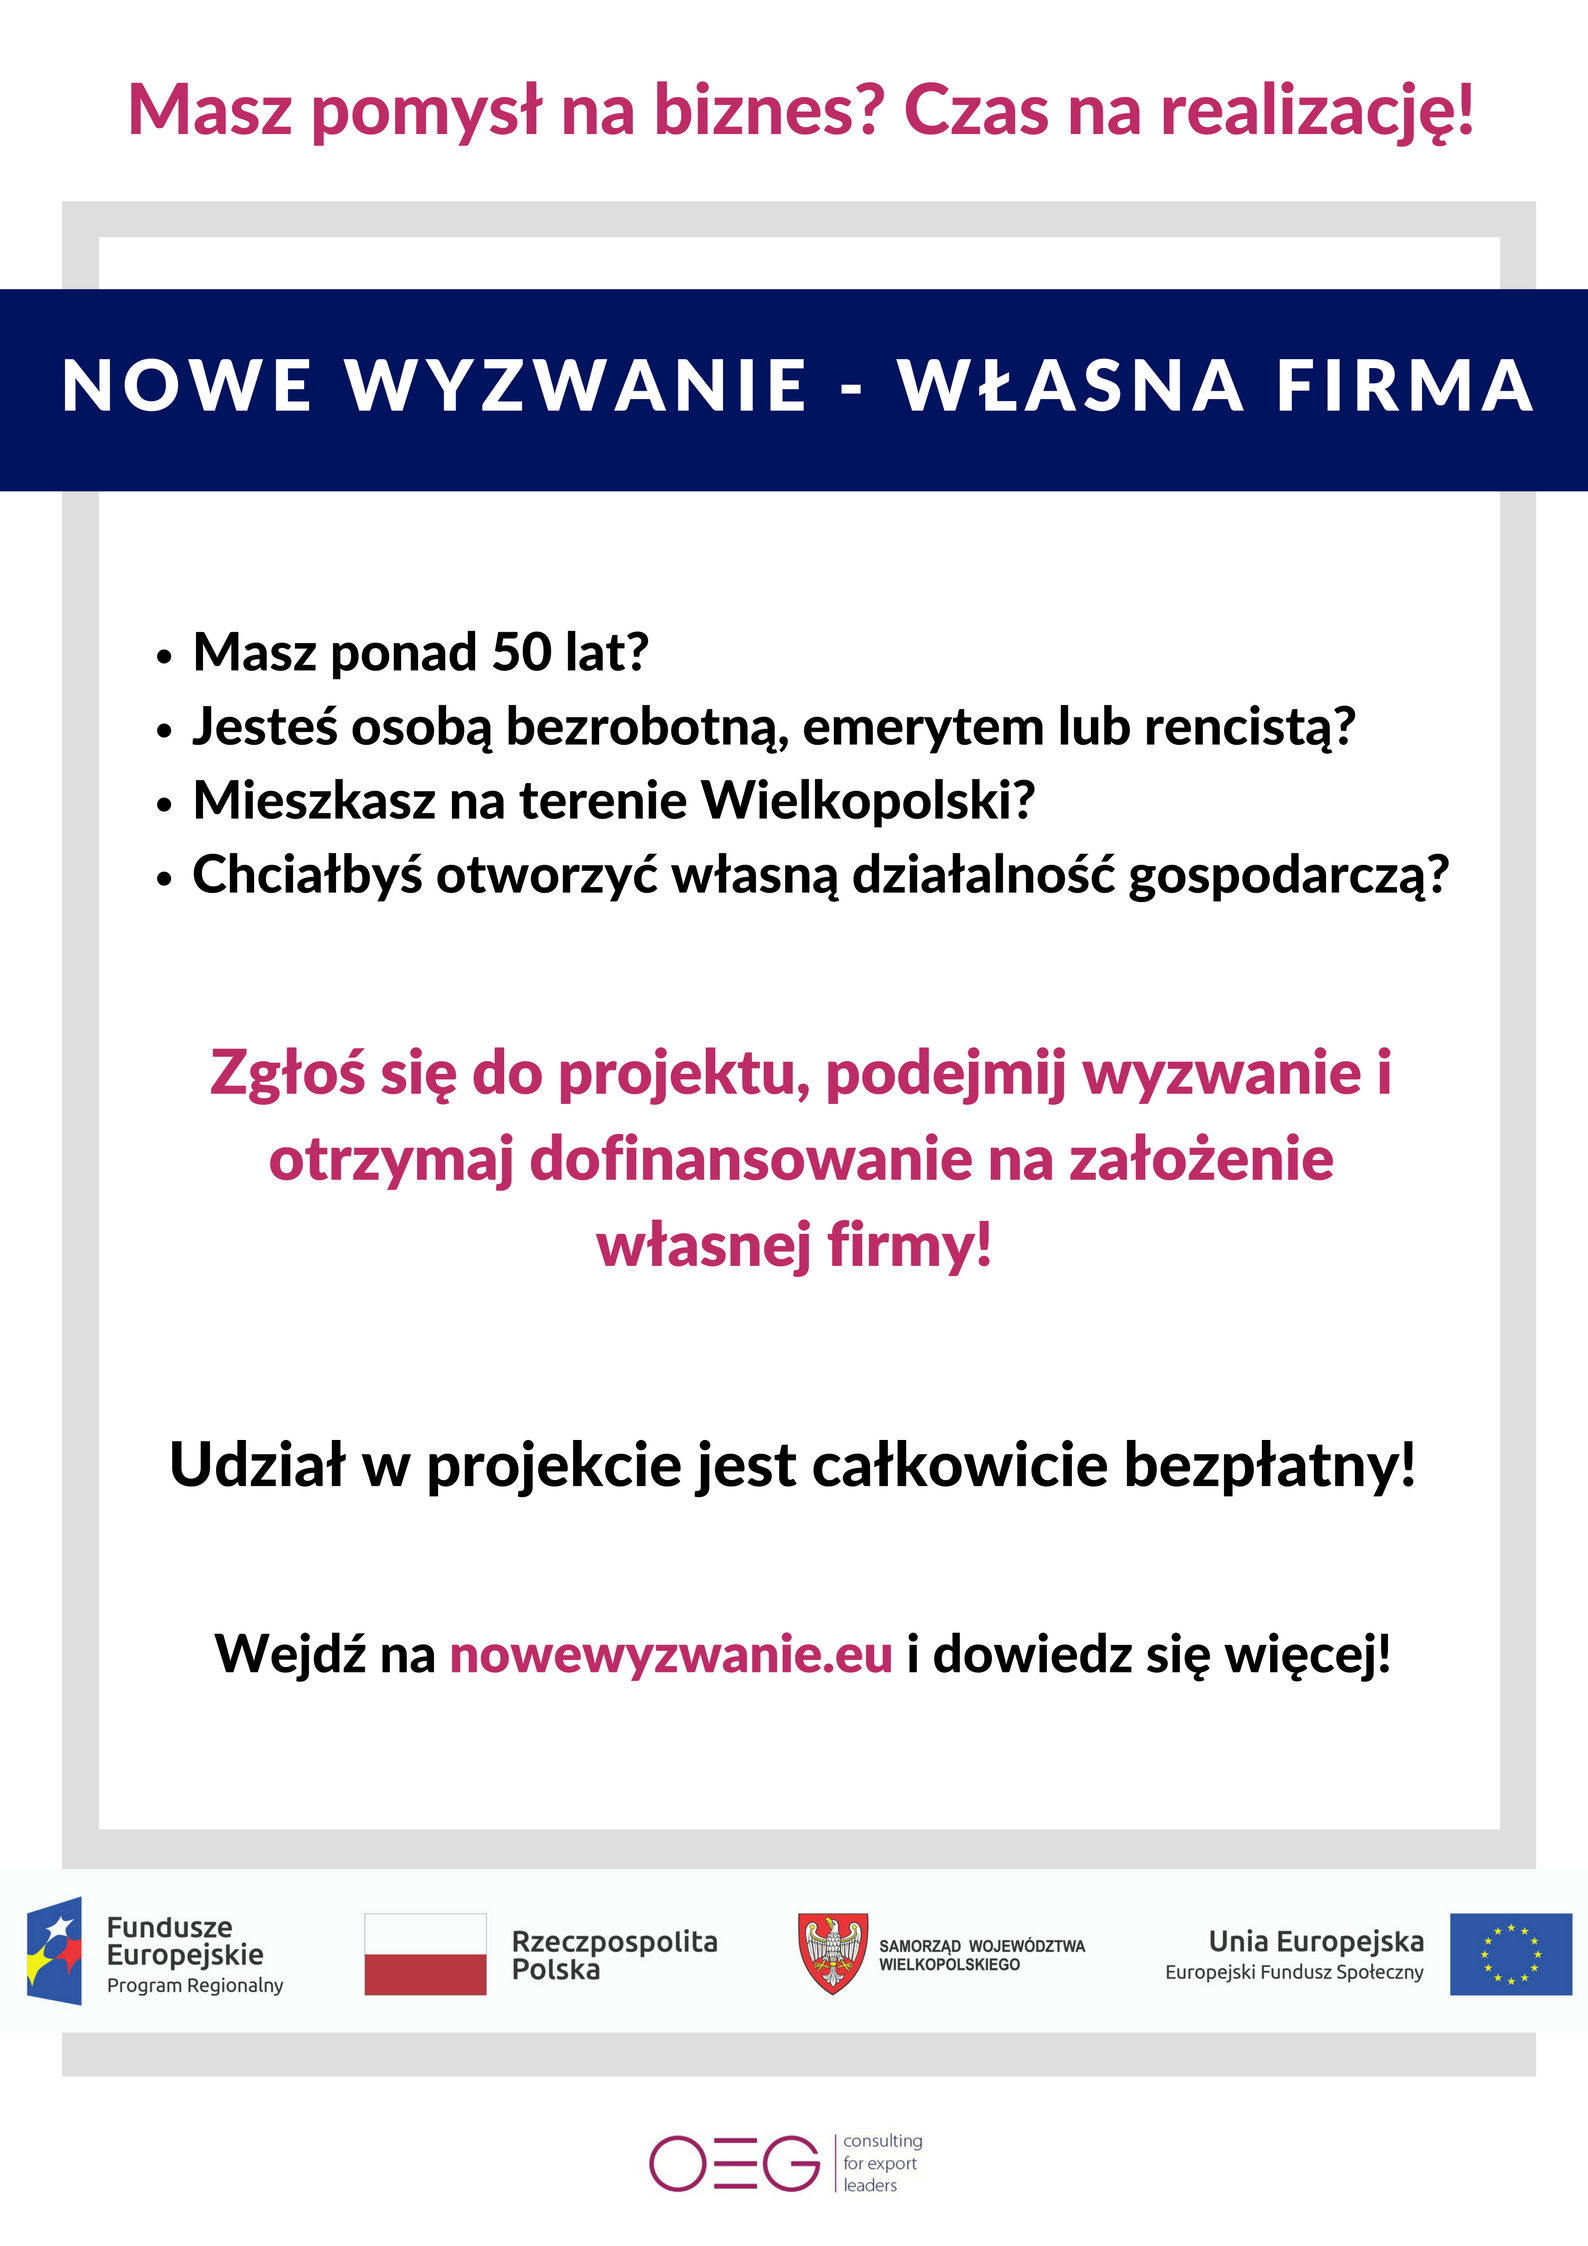 plakat_Nowe_wyzwanie_wlasna_firma.jpg